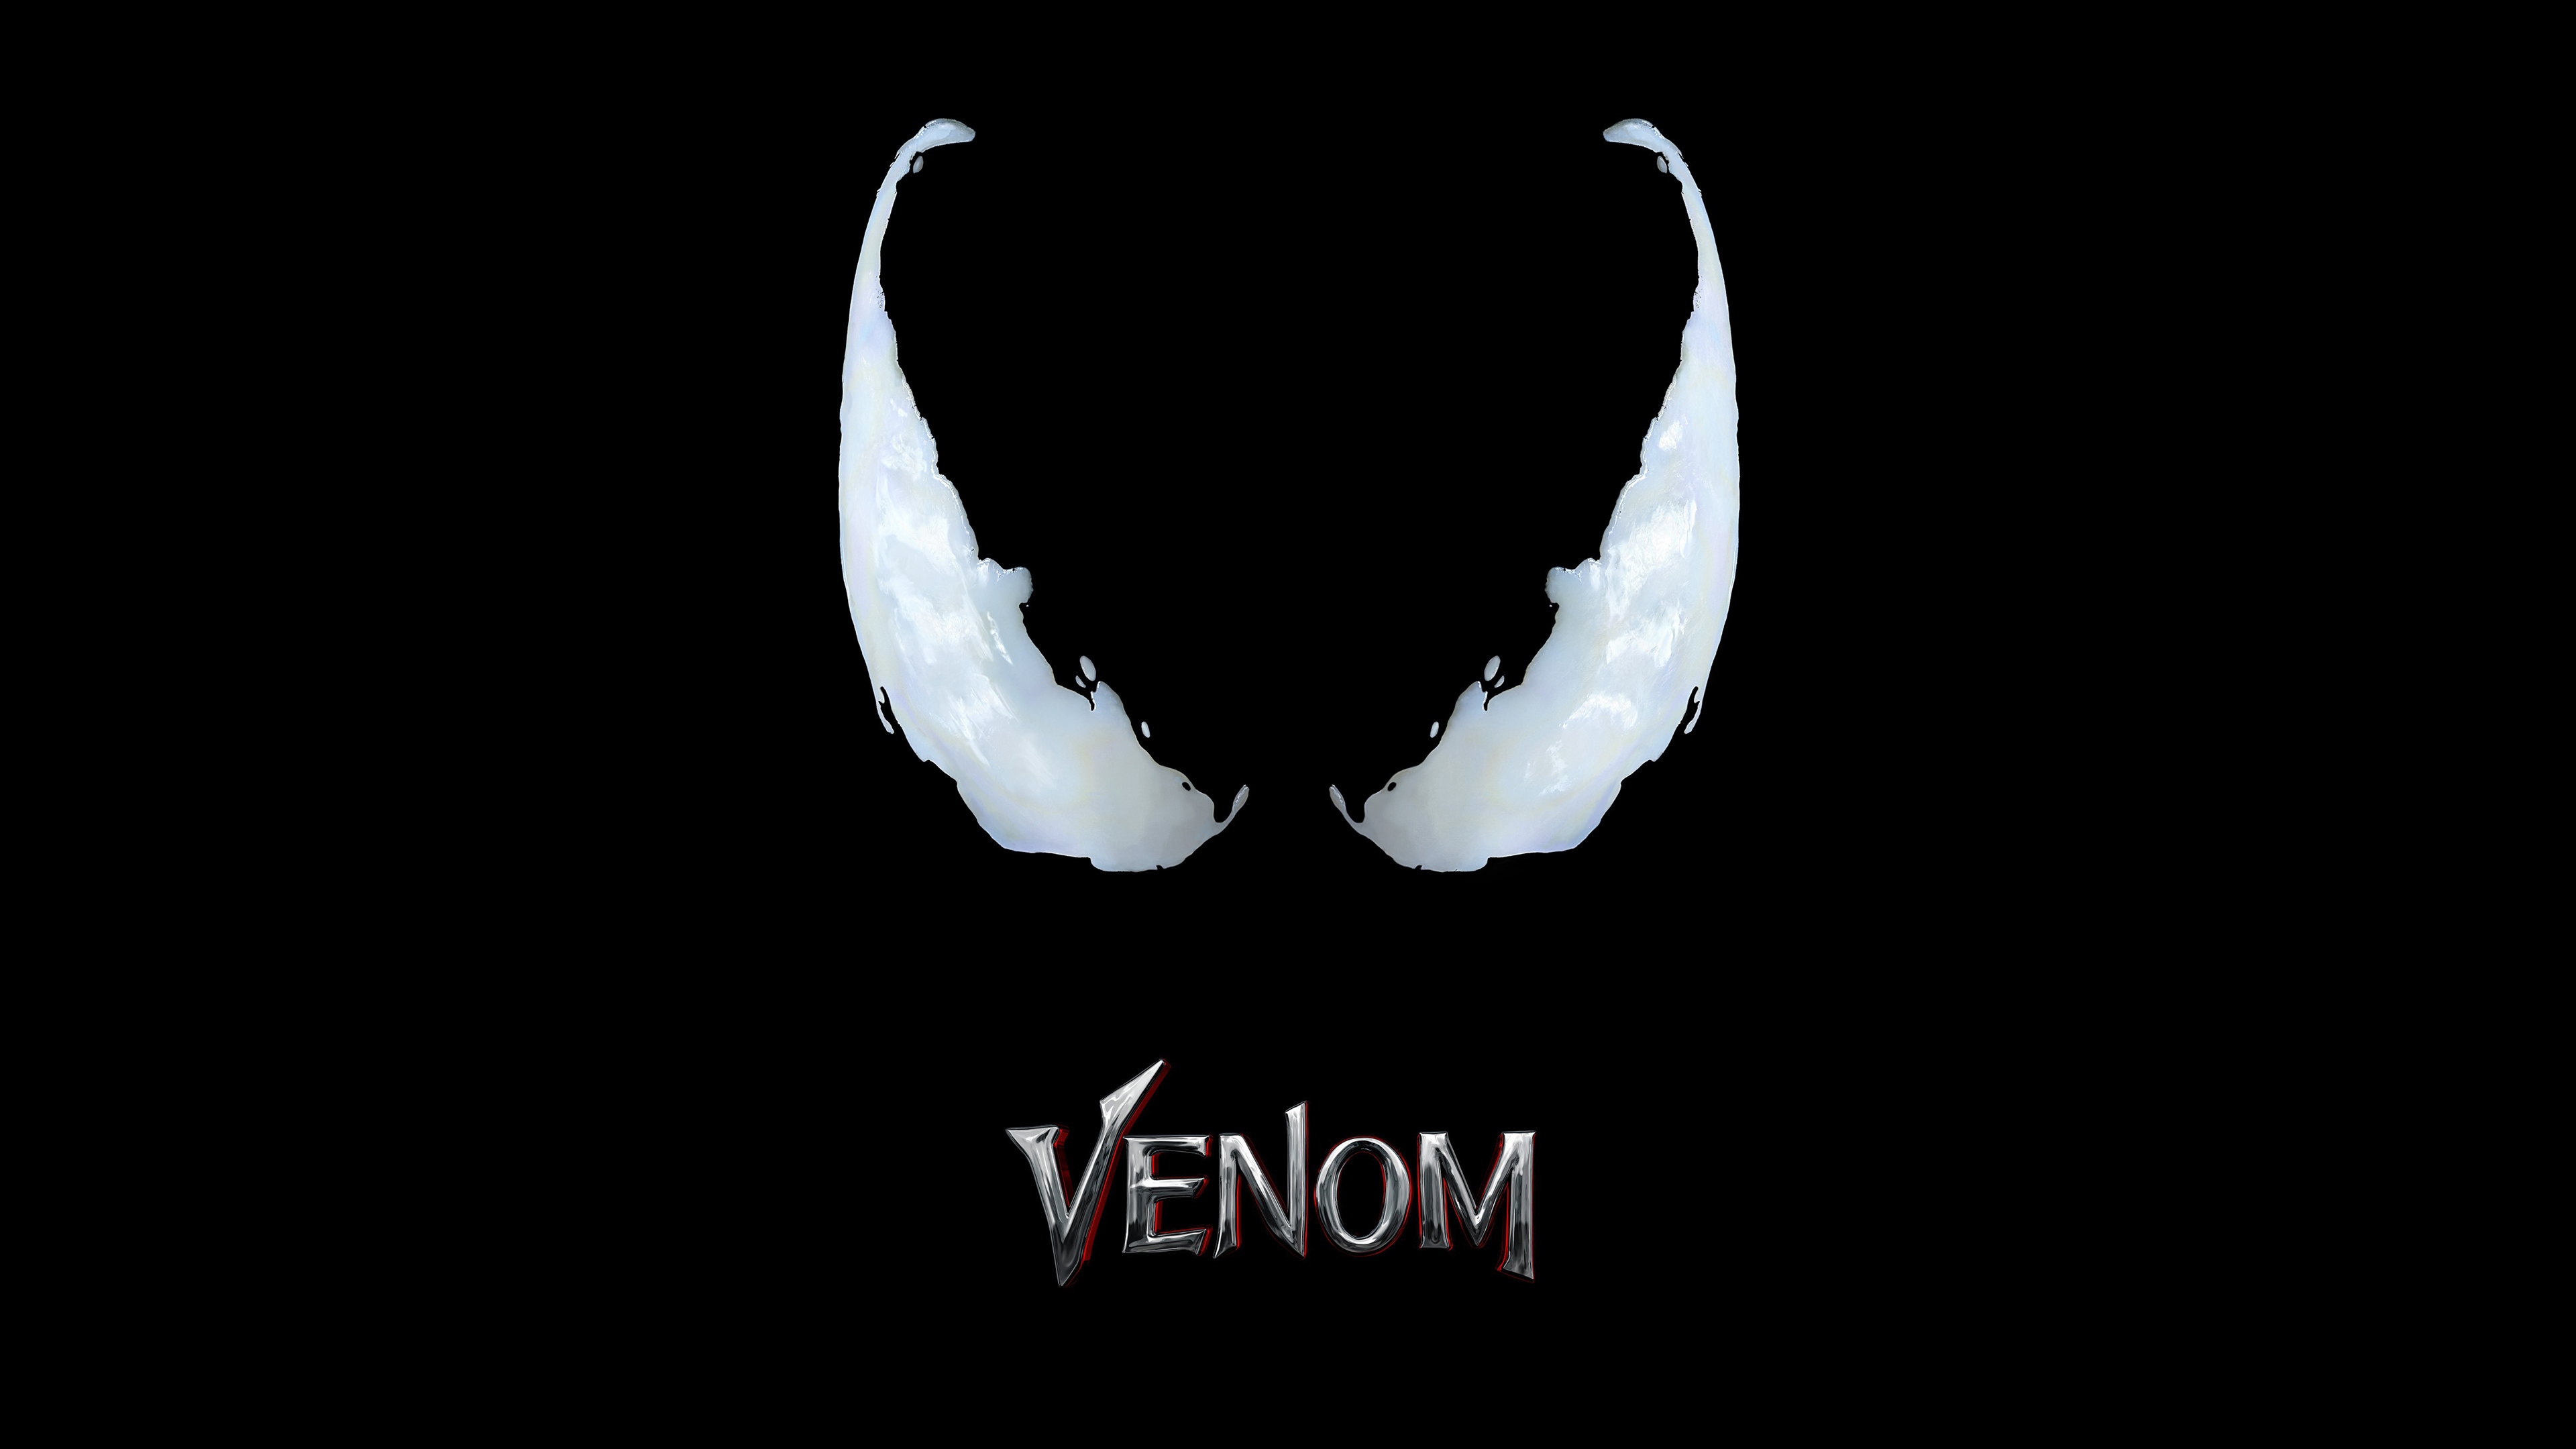 78+] Venom Wallpapers - WallpaperSafari